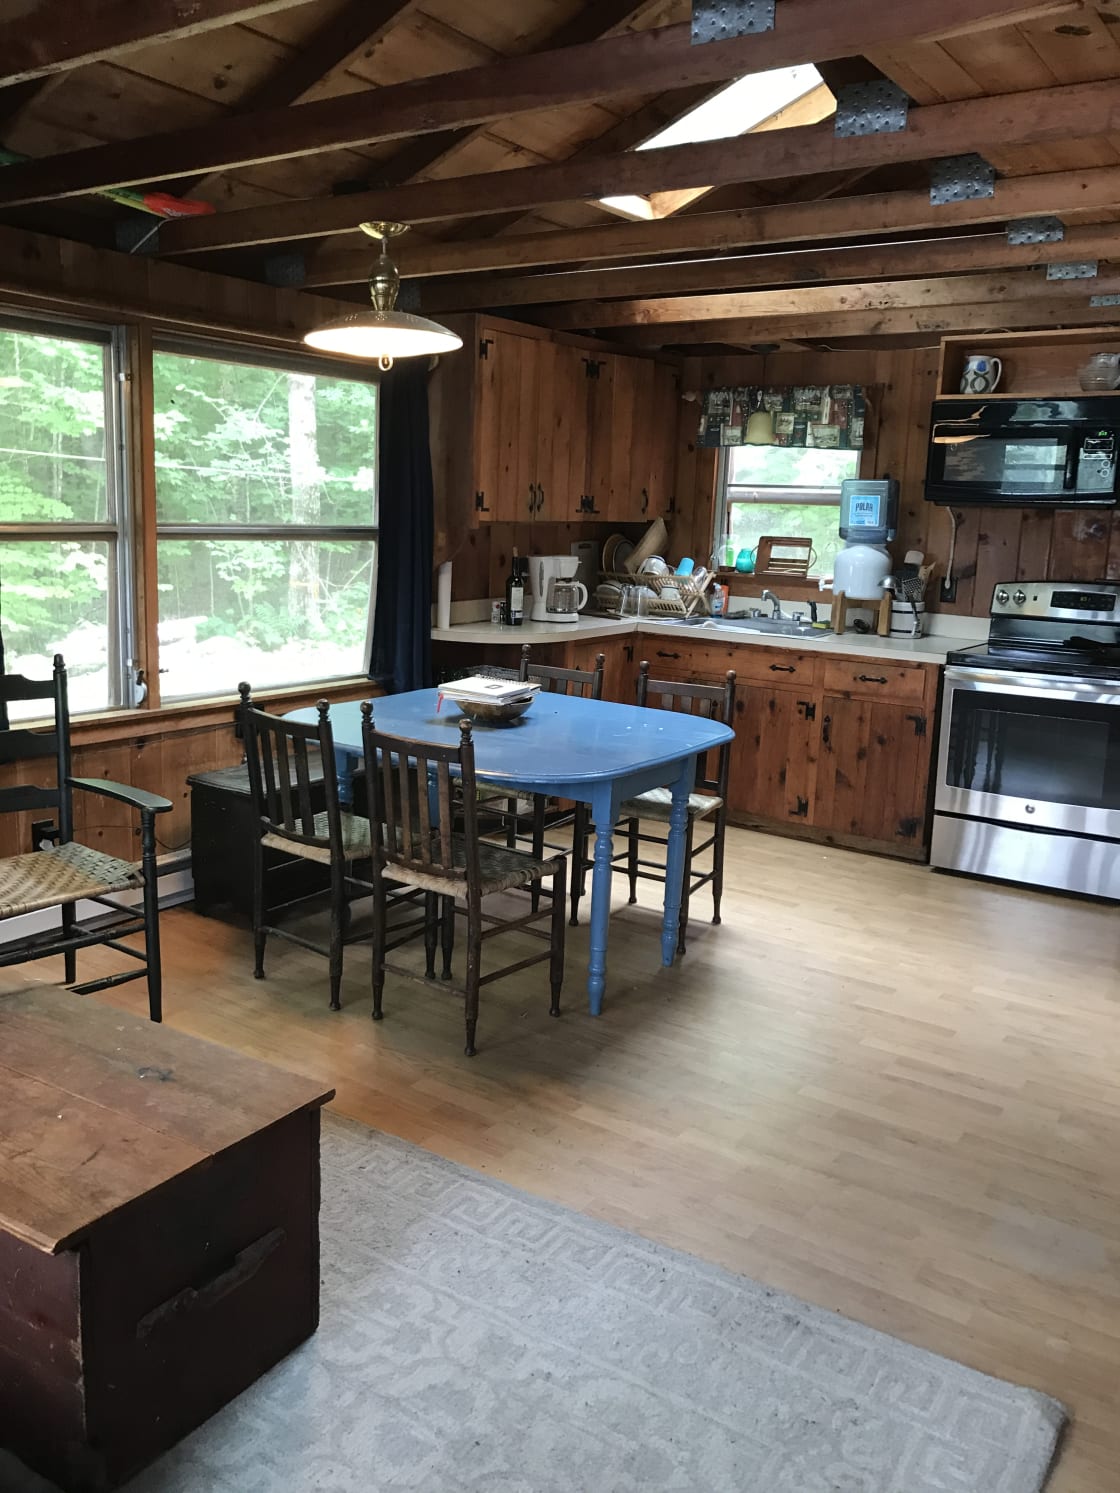 Kitchen area in main cabin